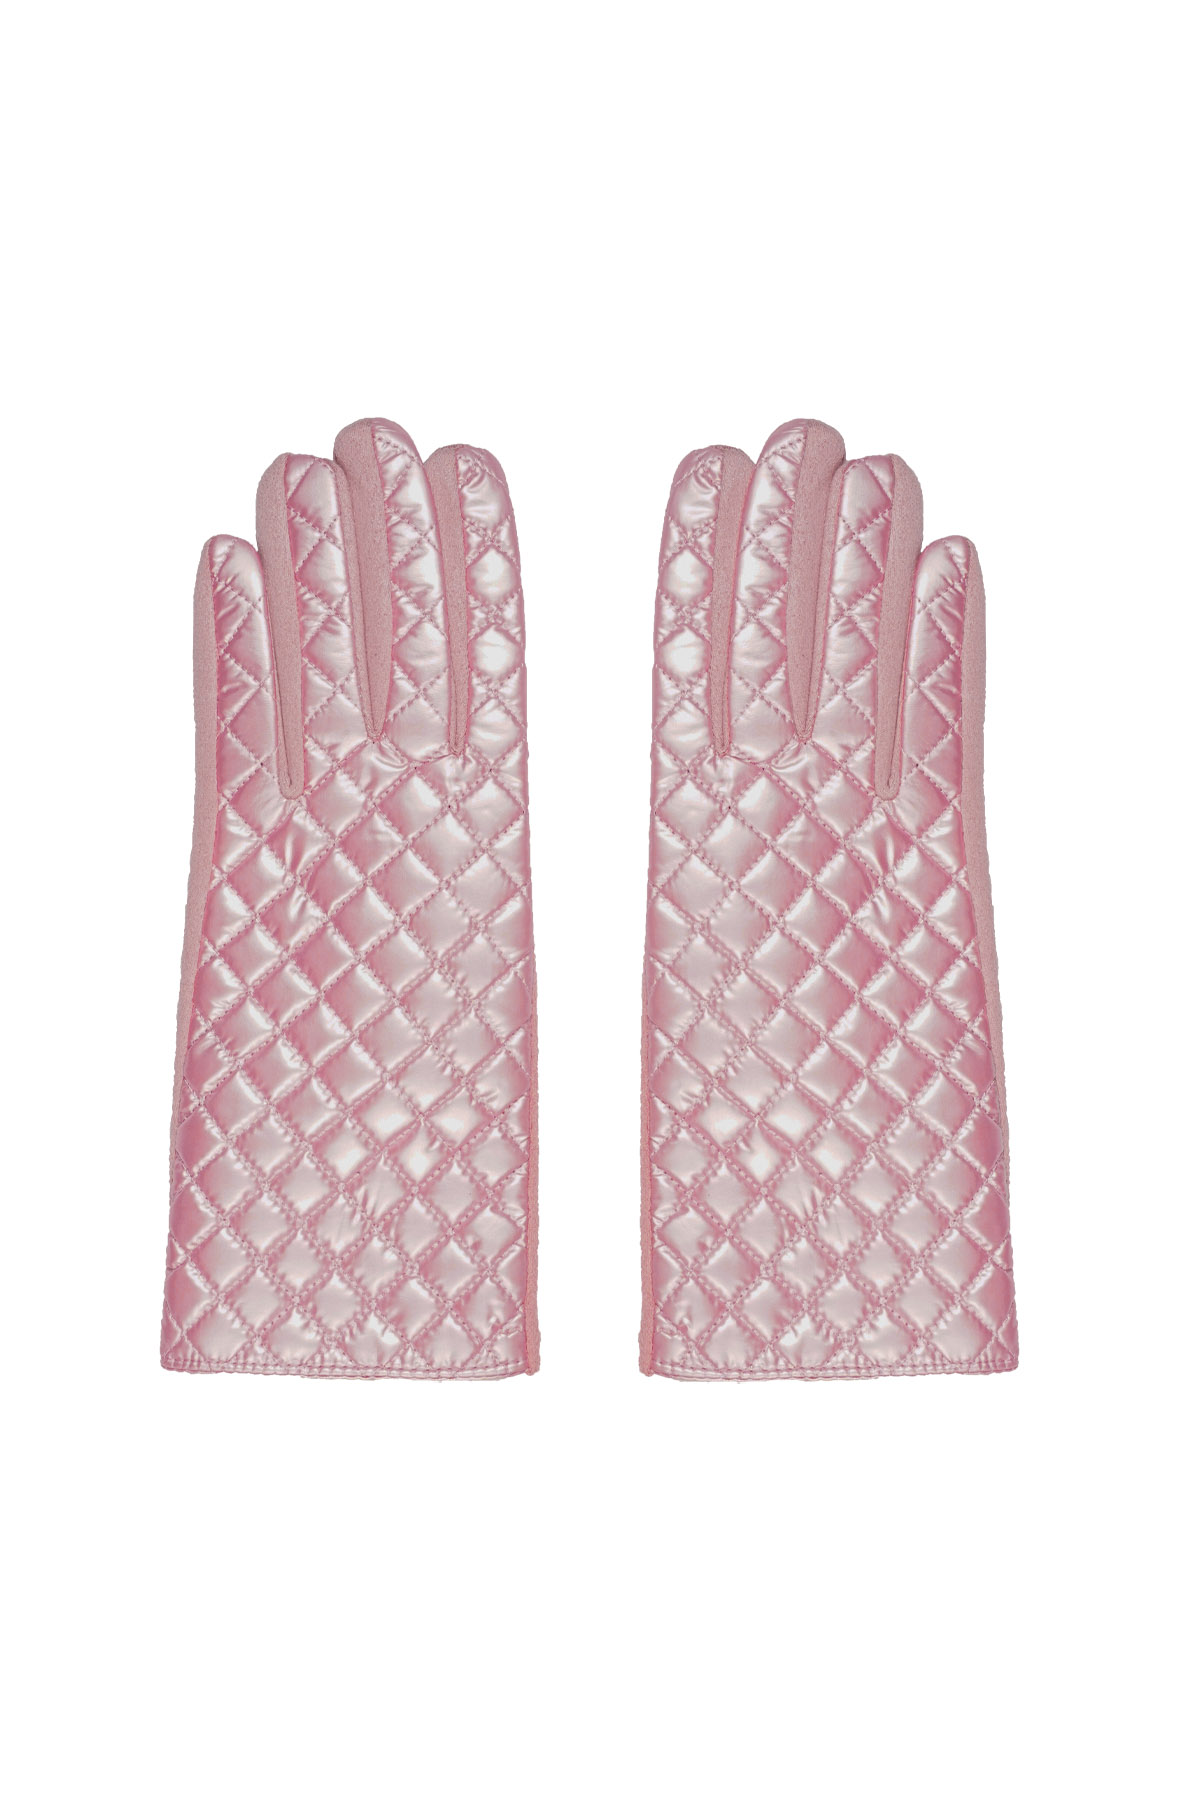 Handschuhe mit genähtem Muster - rosa